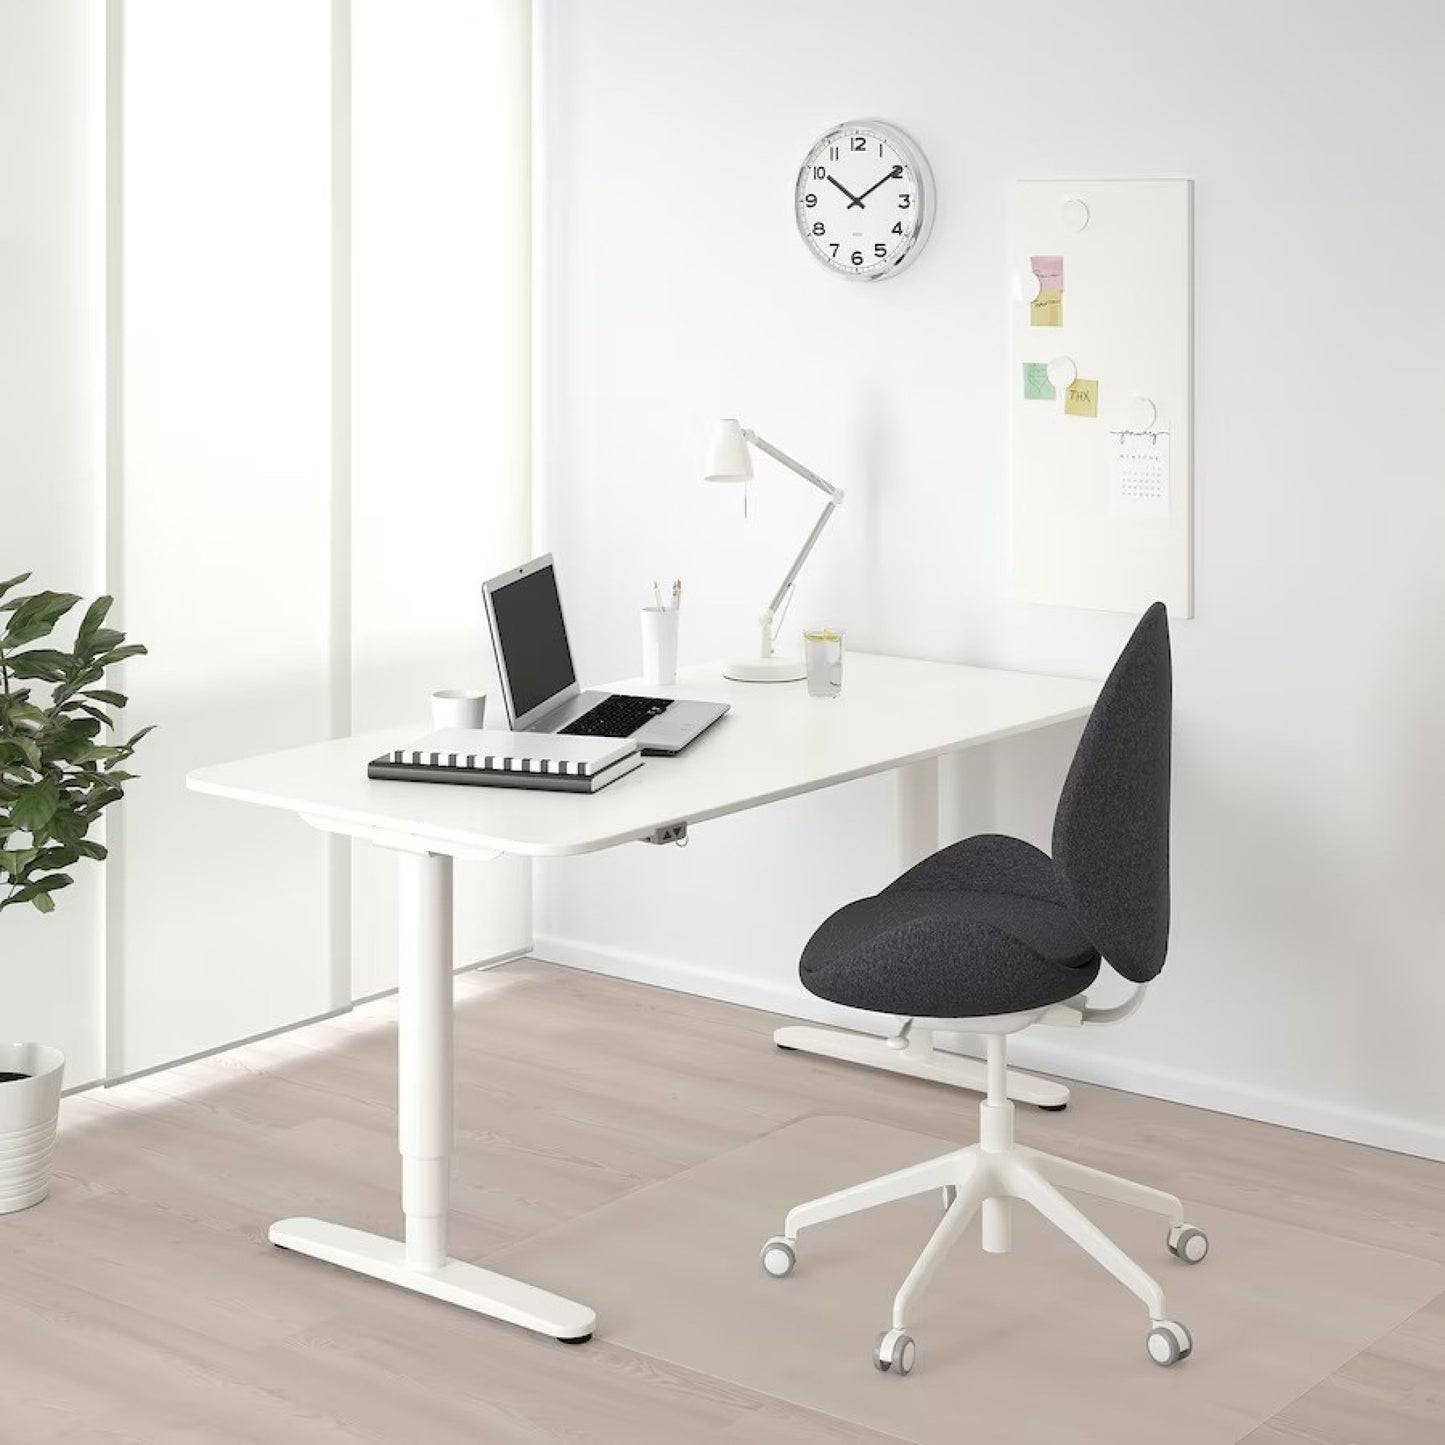 Pent brukt | 160×80, IKEA Bekant elektrisk hev/senk skrivebord, helhvit